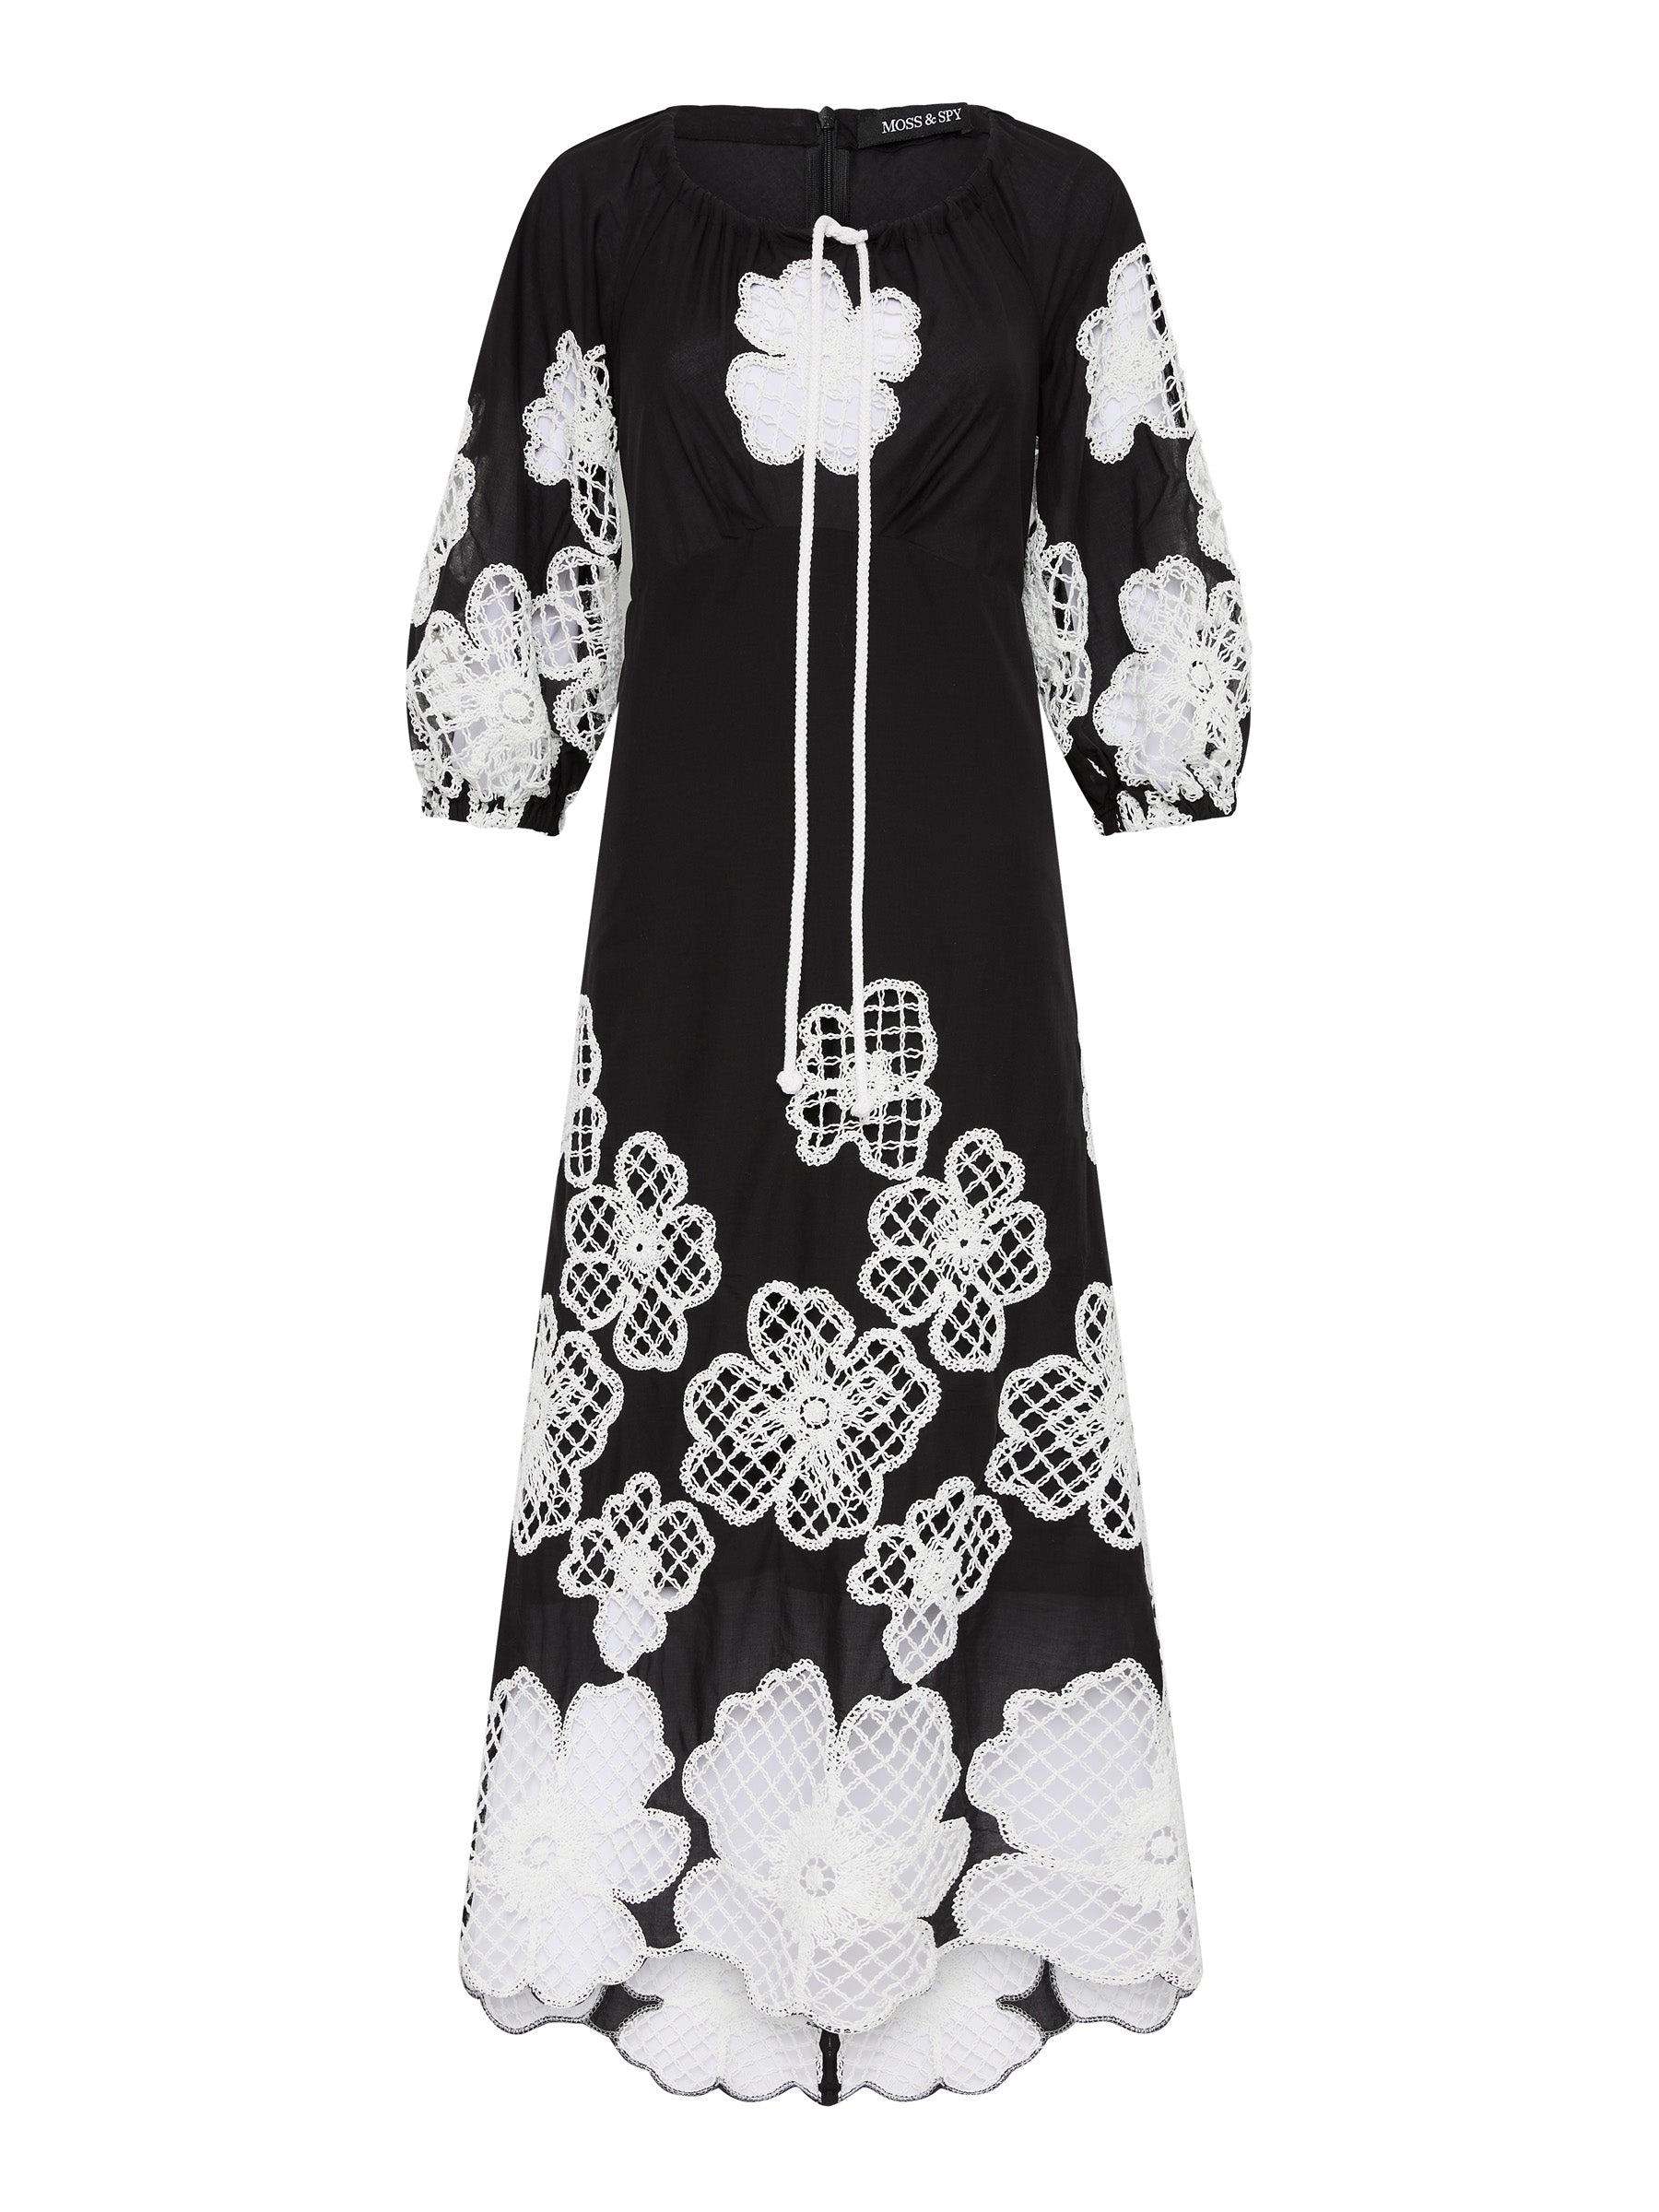 St Tropez Dress - Black/Ivory (Size 8 + 10 Only)